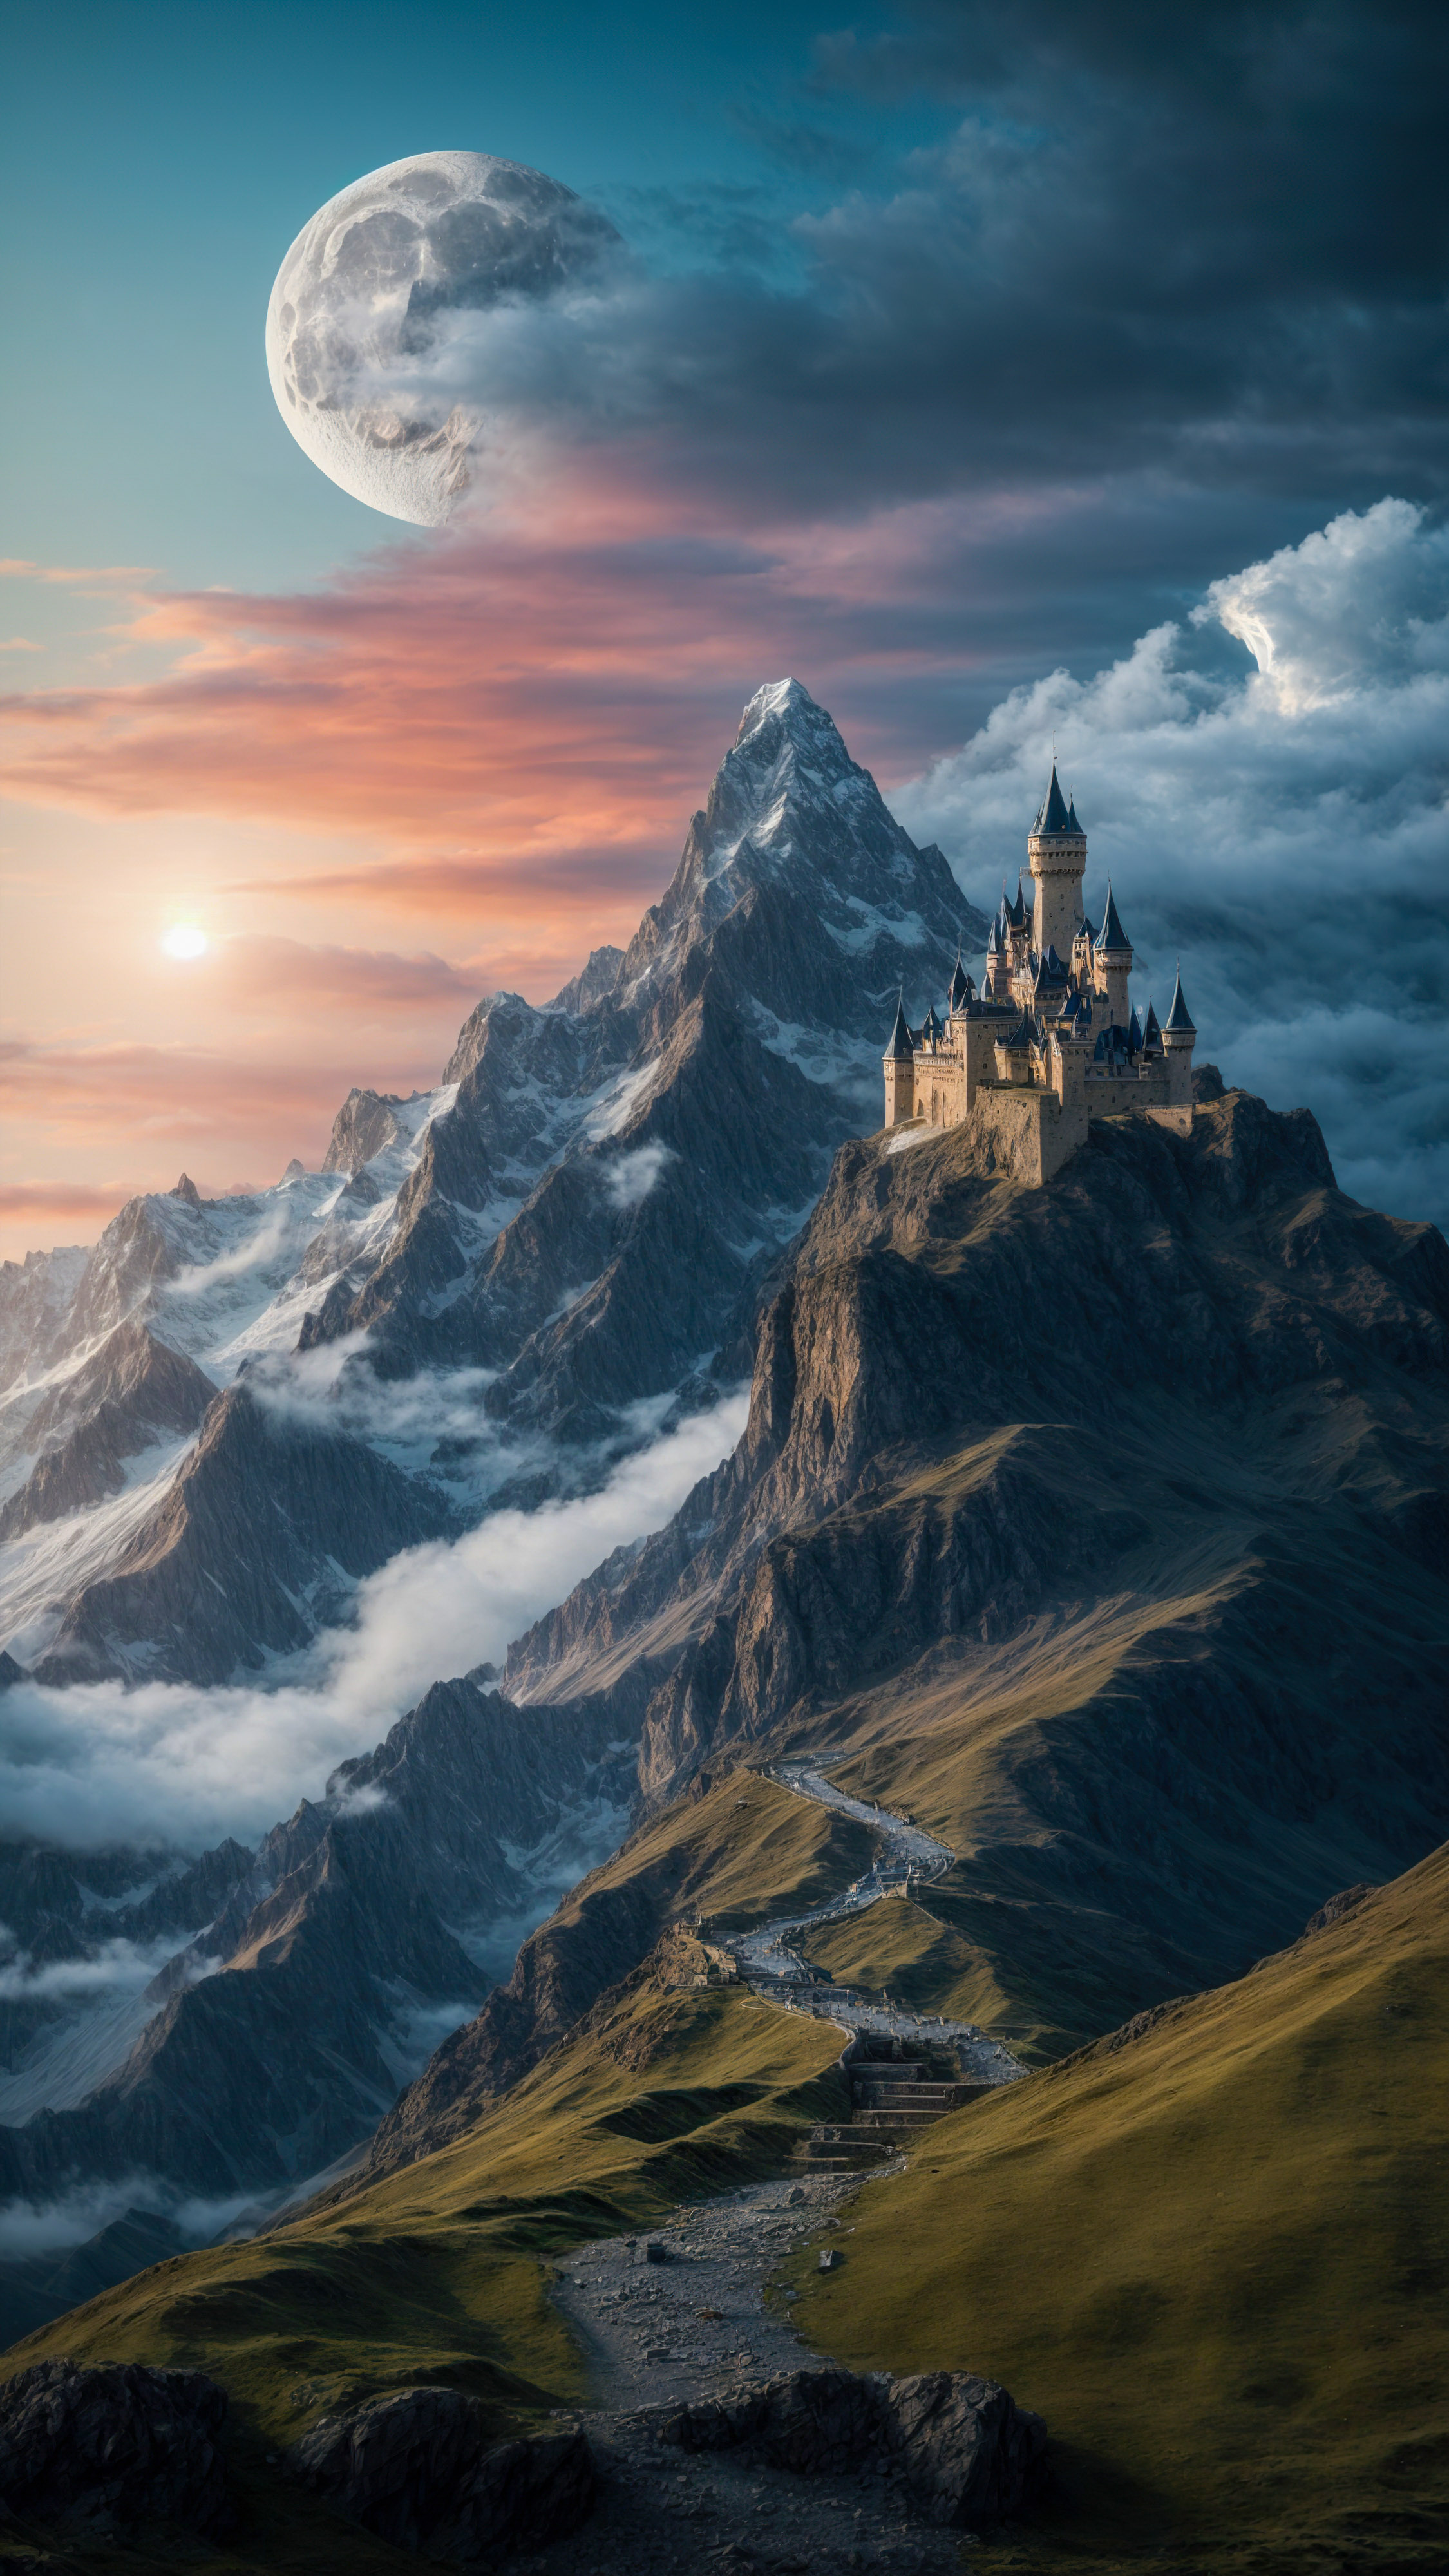 Laissez-vous hypnotiser par des fonds d'écran cool mettant en scène une montagne fantastique avec un château et un dragon, sous un ciel magique et une lune.